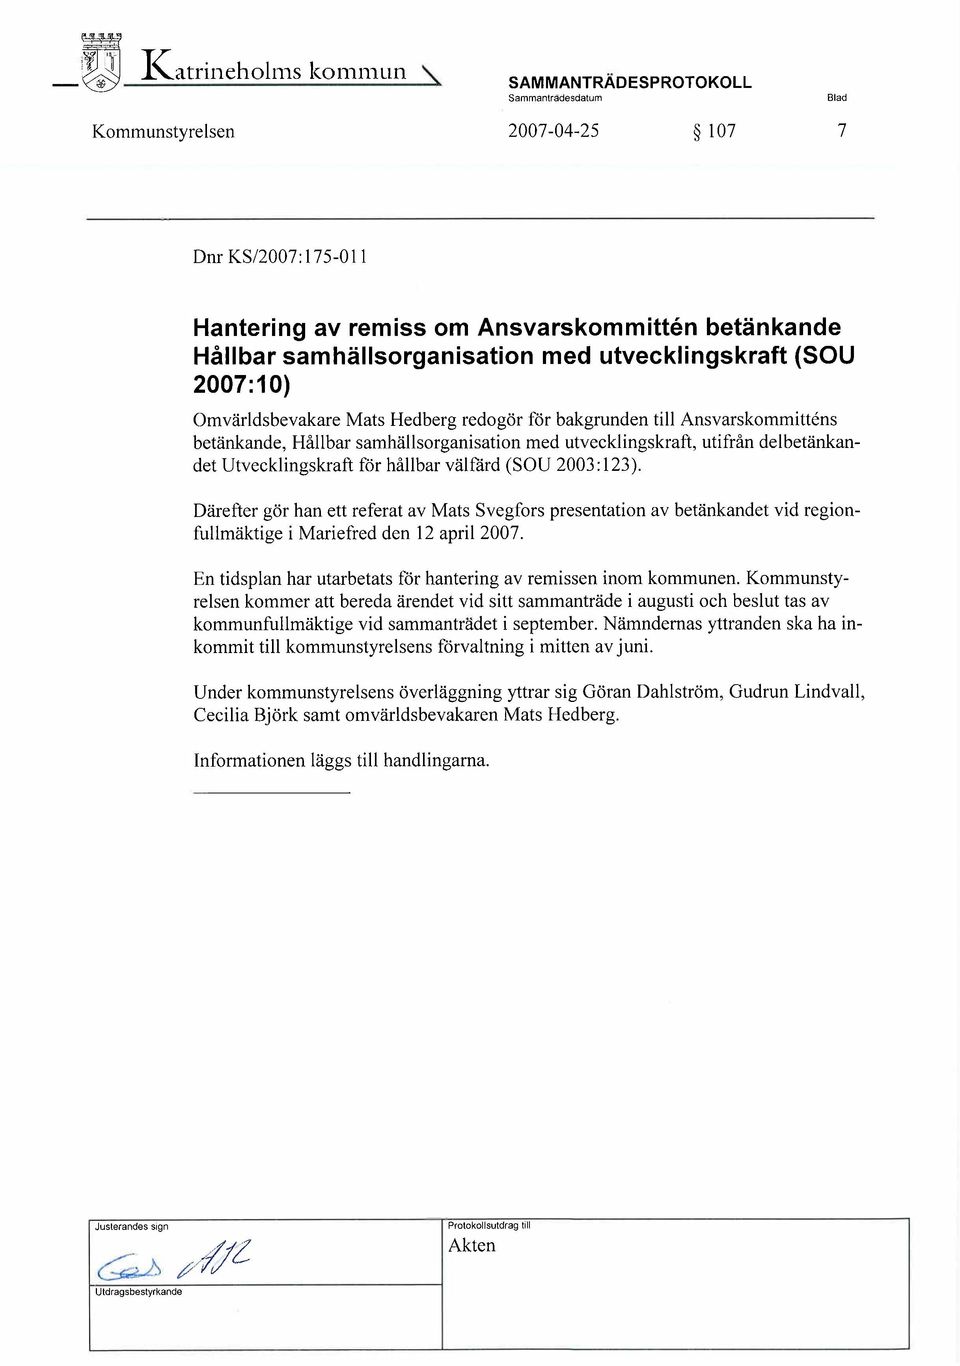 Utvecklingskraft tor hållbar välfård (SOU 2003:123). Därefter gör han ett referat av Mats Svegfors presentation av betänkandet vid regionfullmäktige i Mariefred den 12 april 2007.